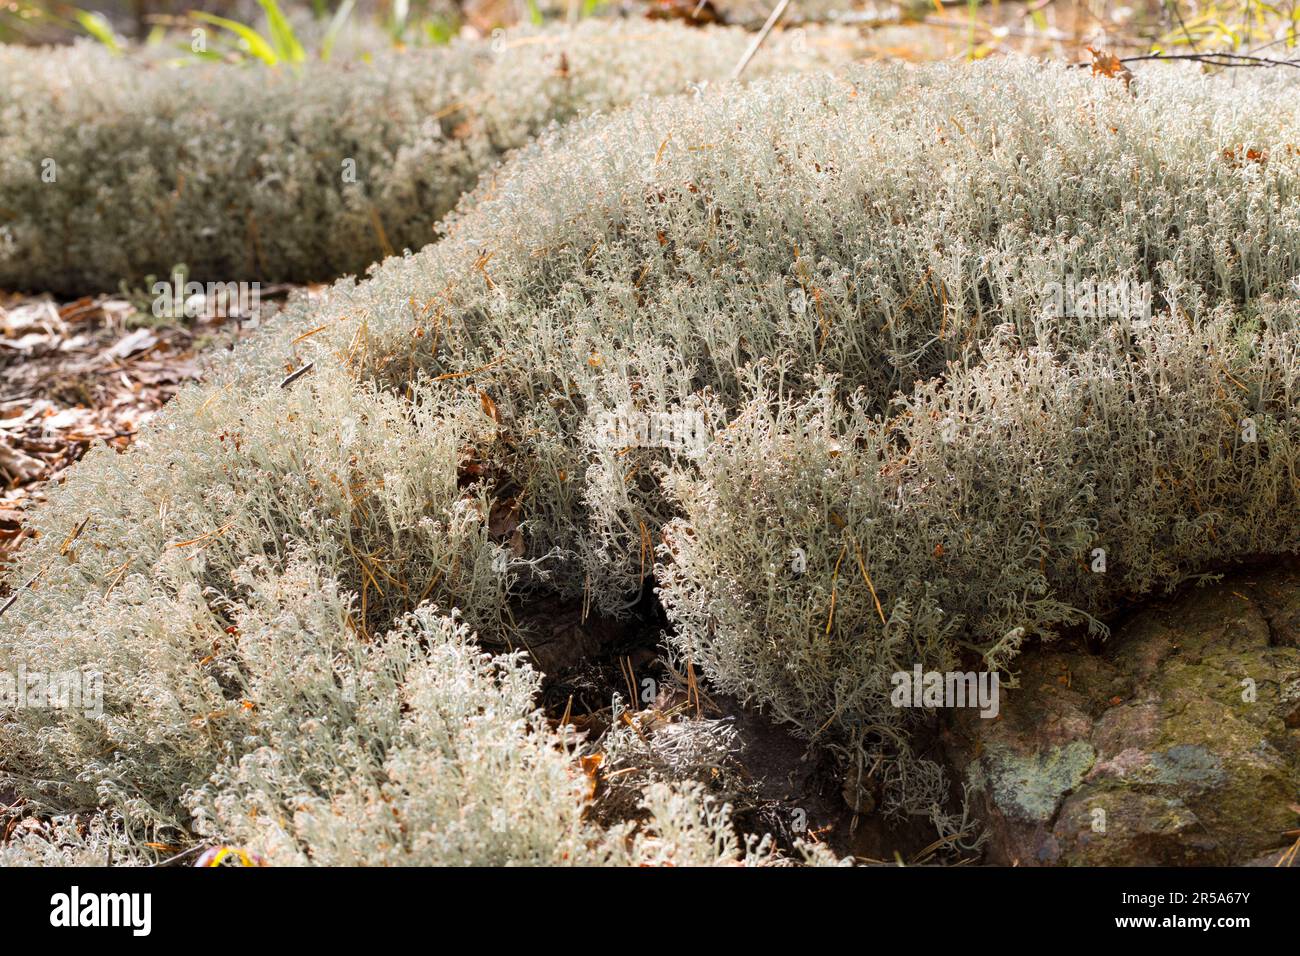 Reindeer lichen, Reindeer Moss (Cladonia rangiferina), habit, Sweden Stock Photo